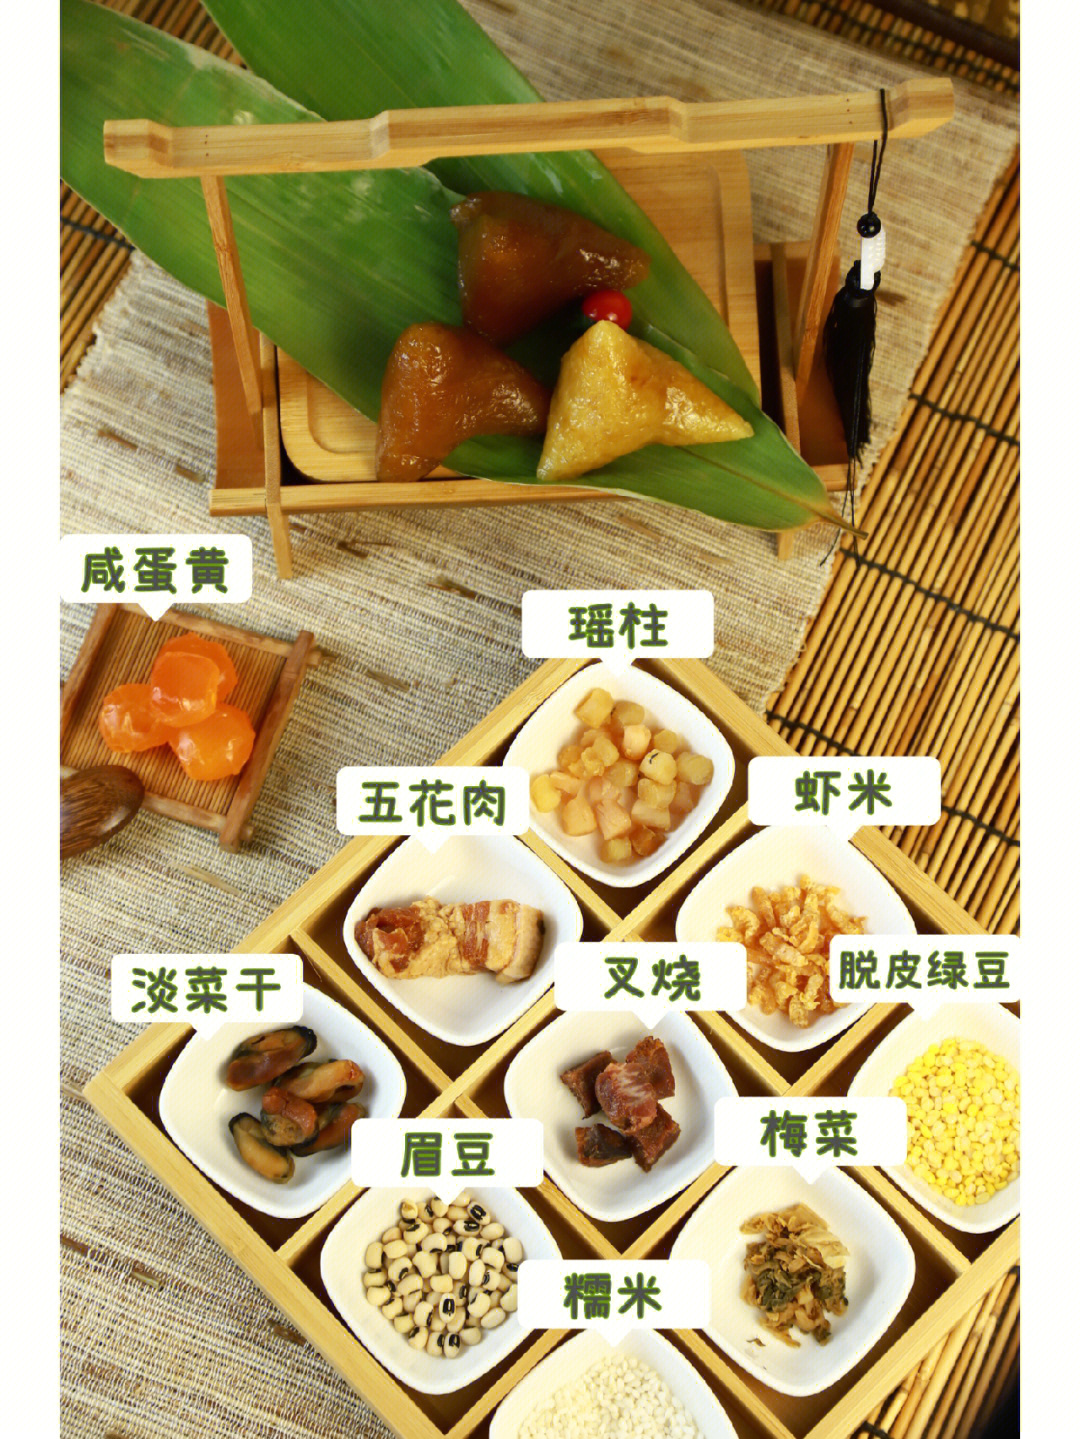 肉粽子的做法和配料图片